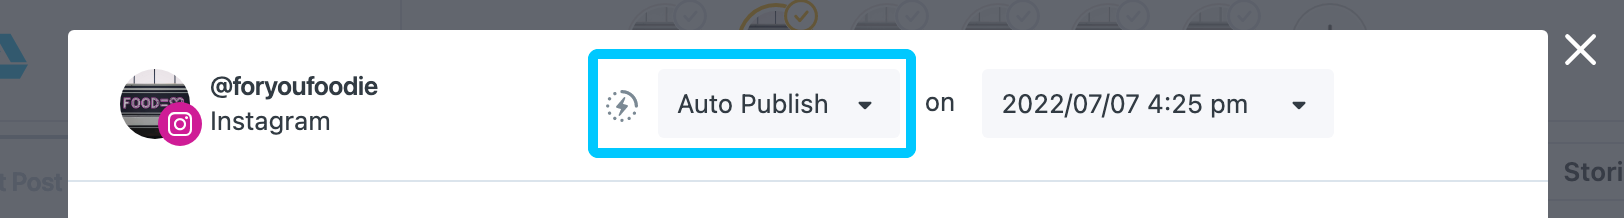 auto-publish-post-builder.png